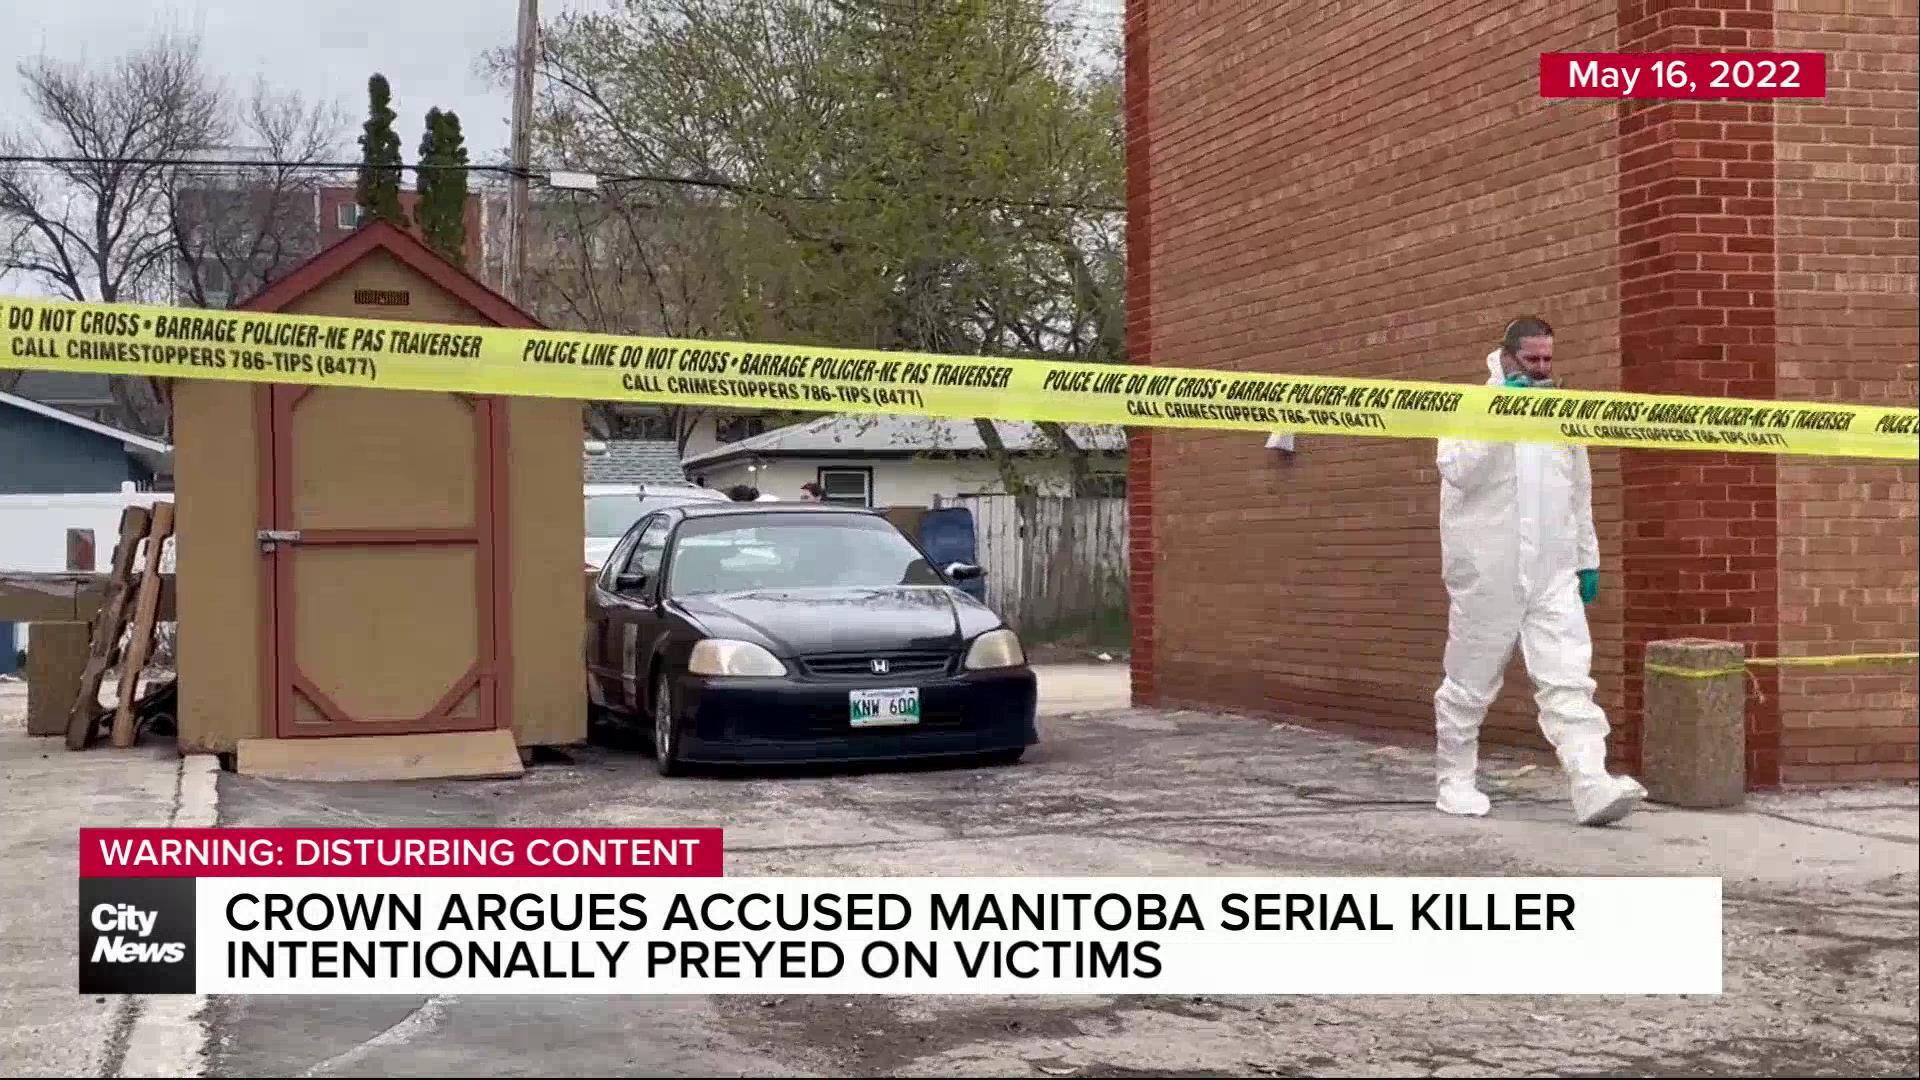 Murders were “mercy killings” accused Manitoba serial killer says